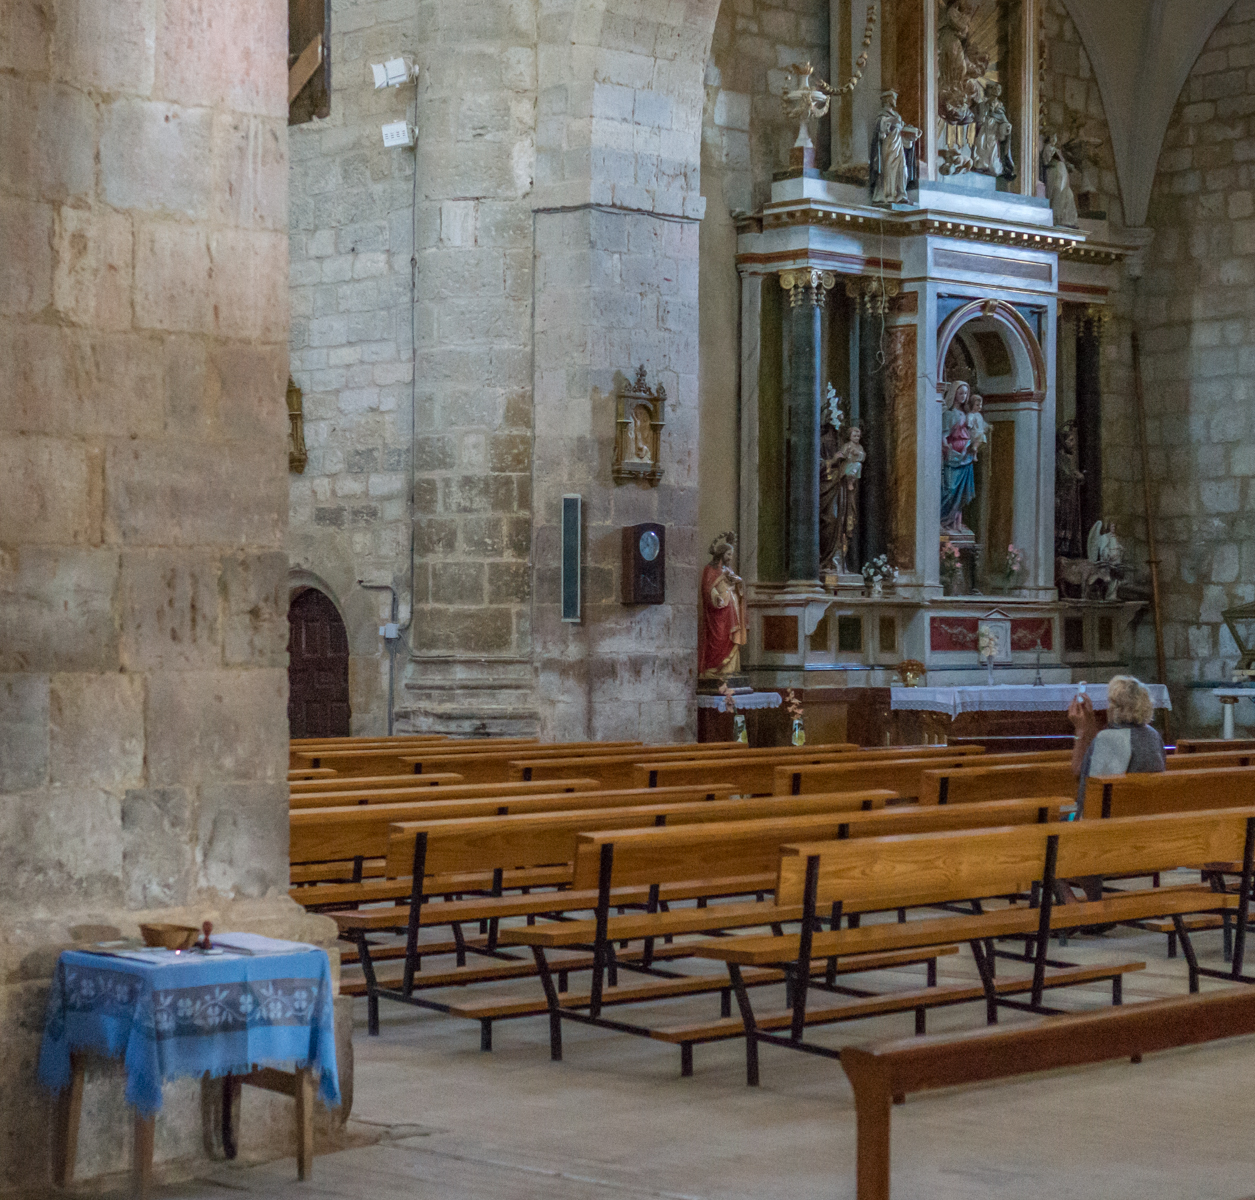 Interior of Iglesia de Nuestra Señora de la Asunción in Boadilla del Camino, Spain | Photo by Mike Hudak